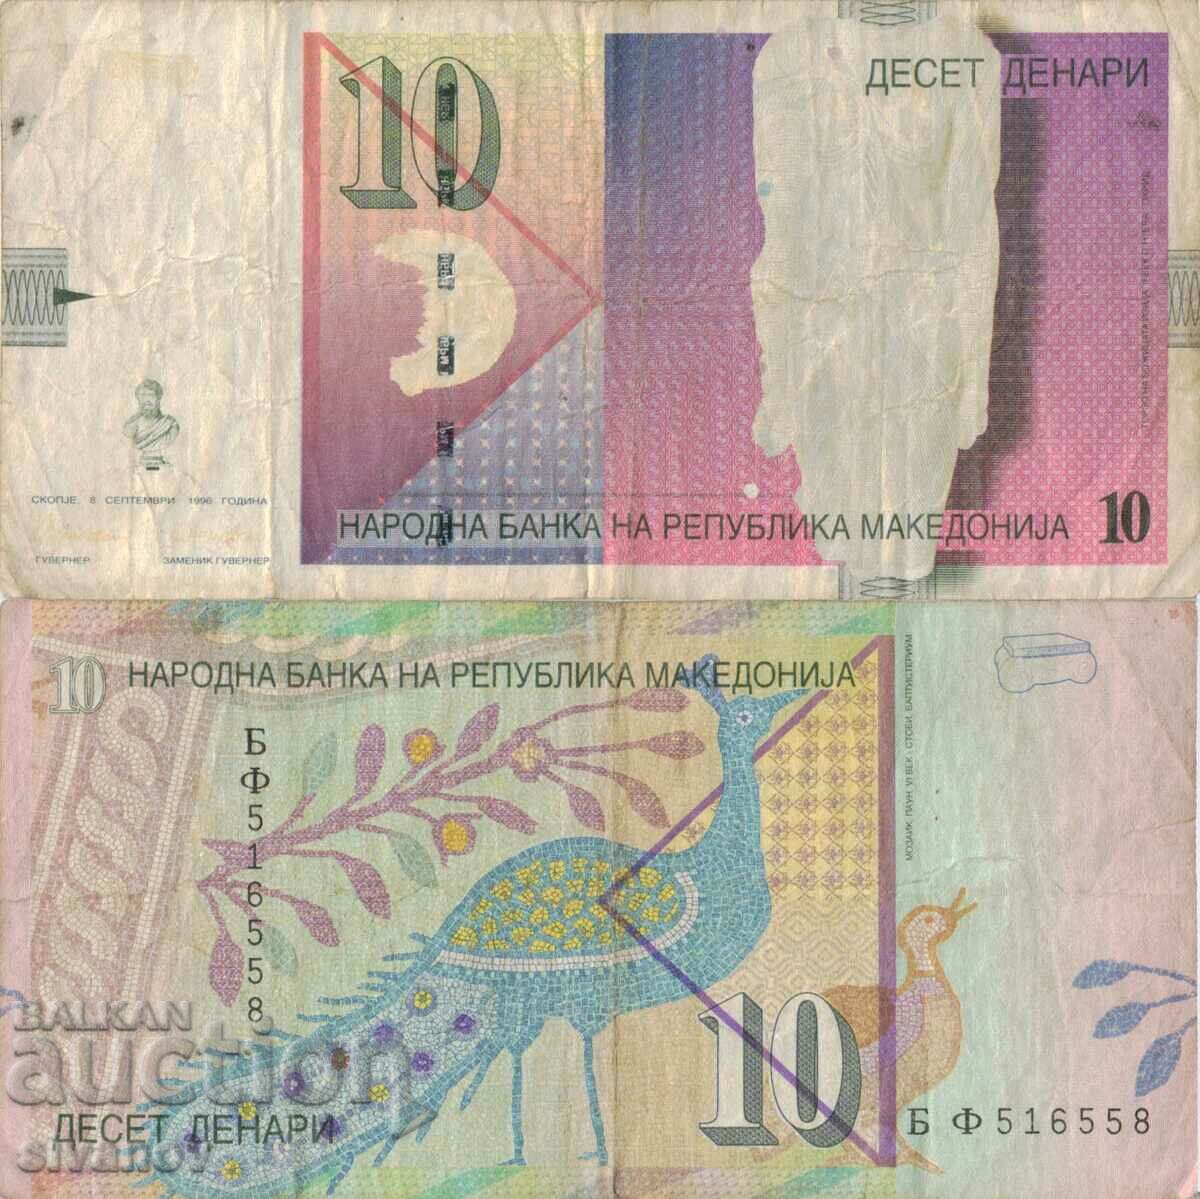 Macedonia 10 denari 1996 bancnota #5224